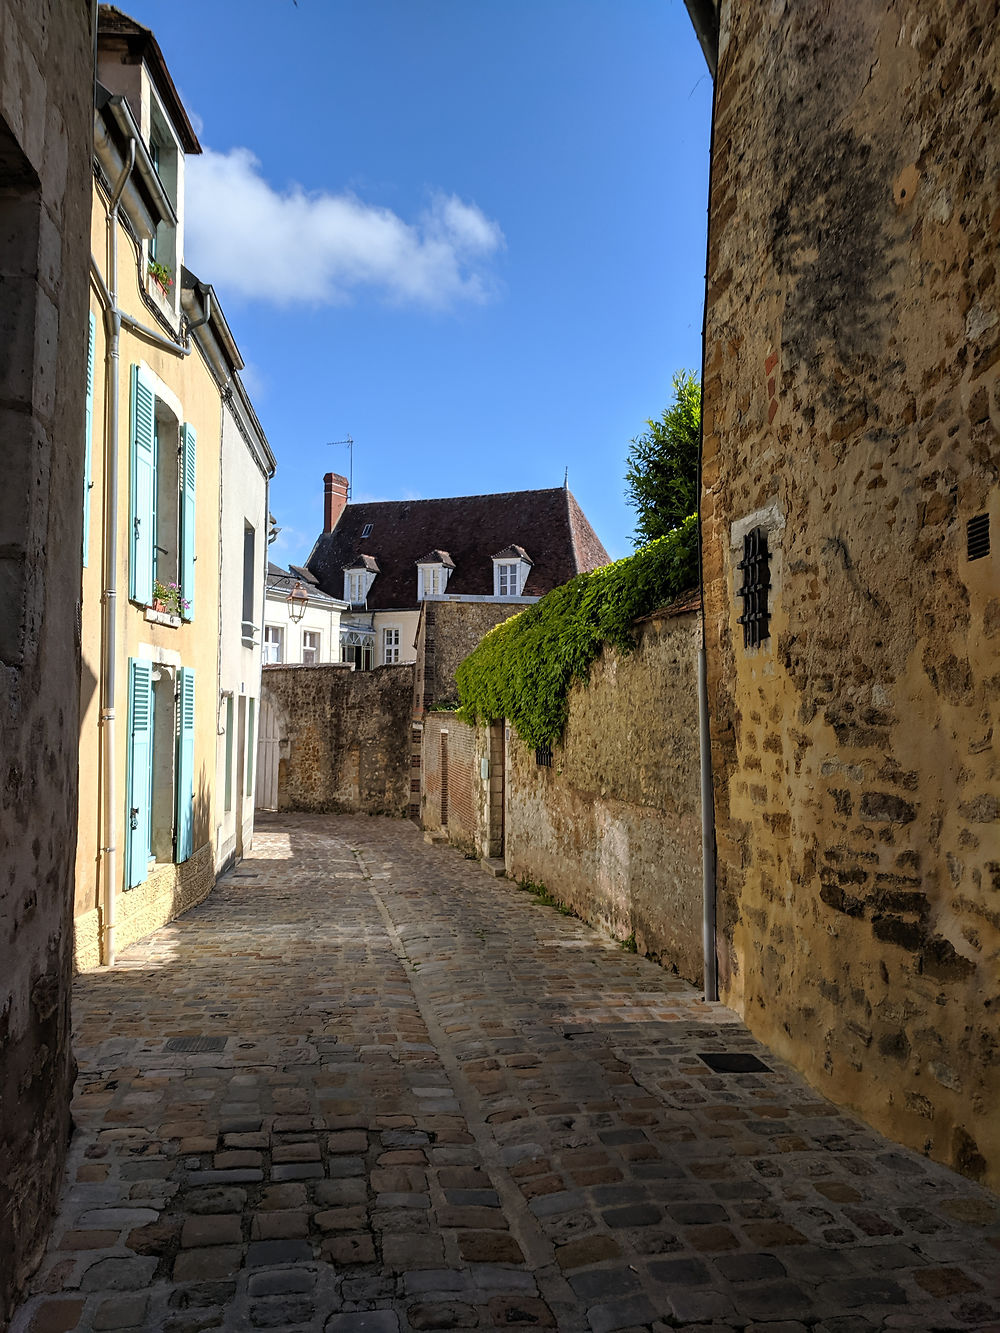 Re: Carnet de voyage, week-end au sud de la Normandie - Fecampois